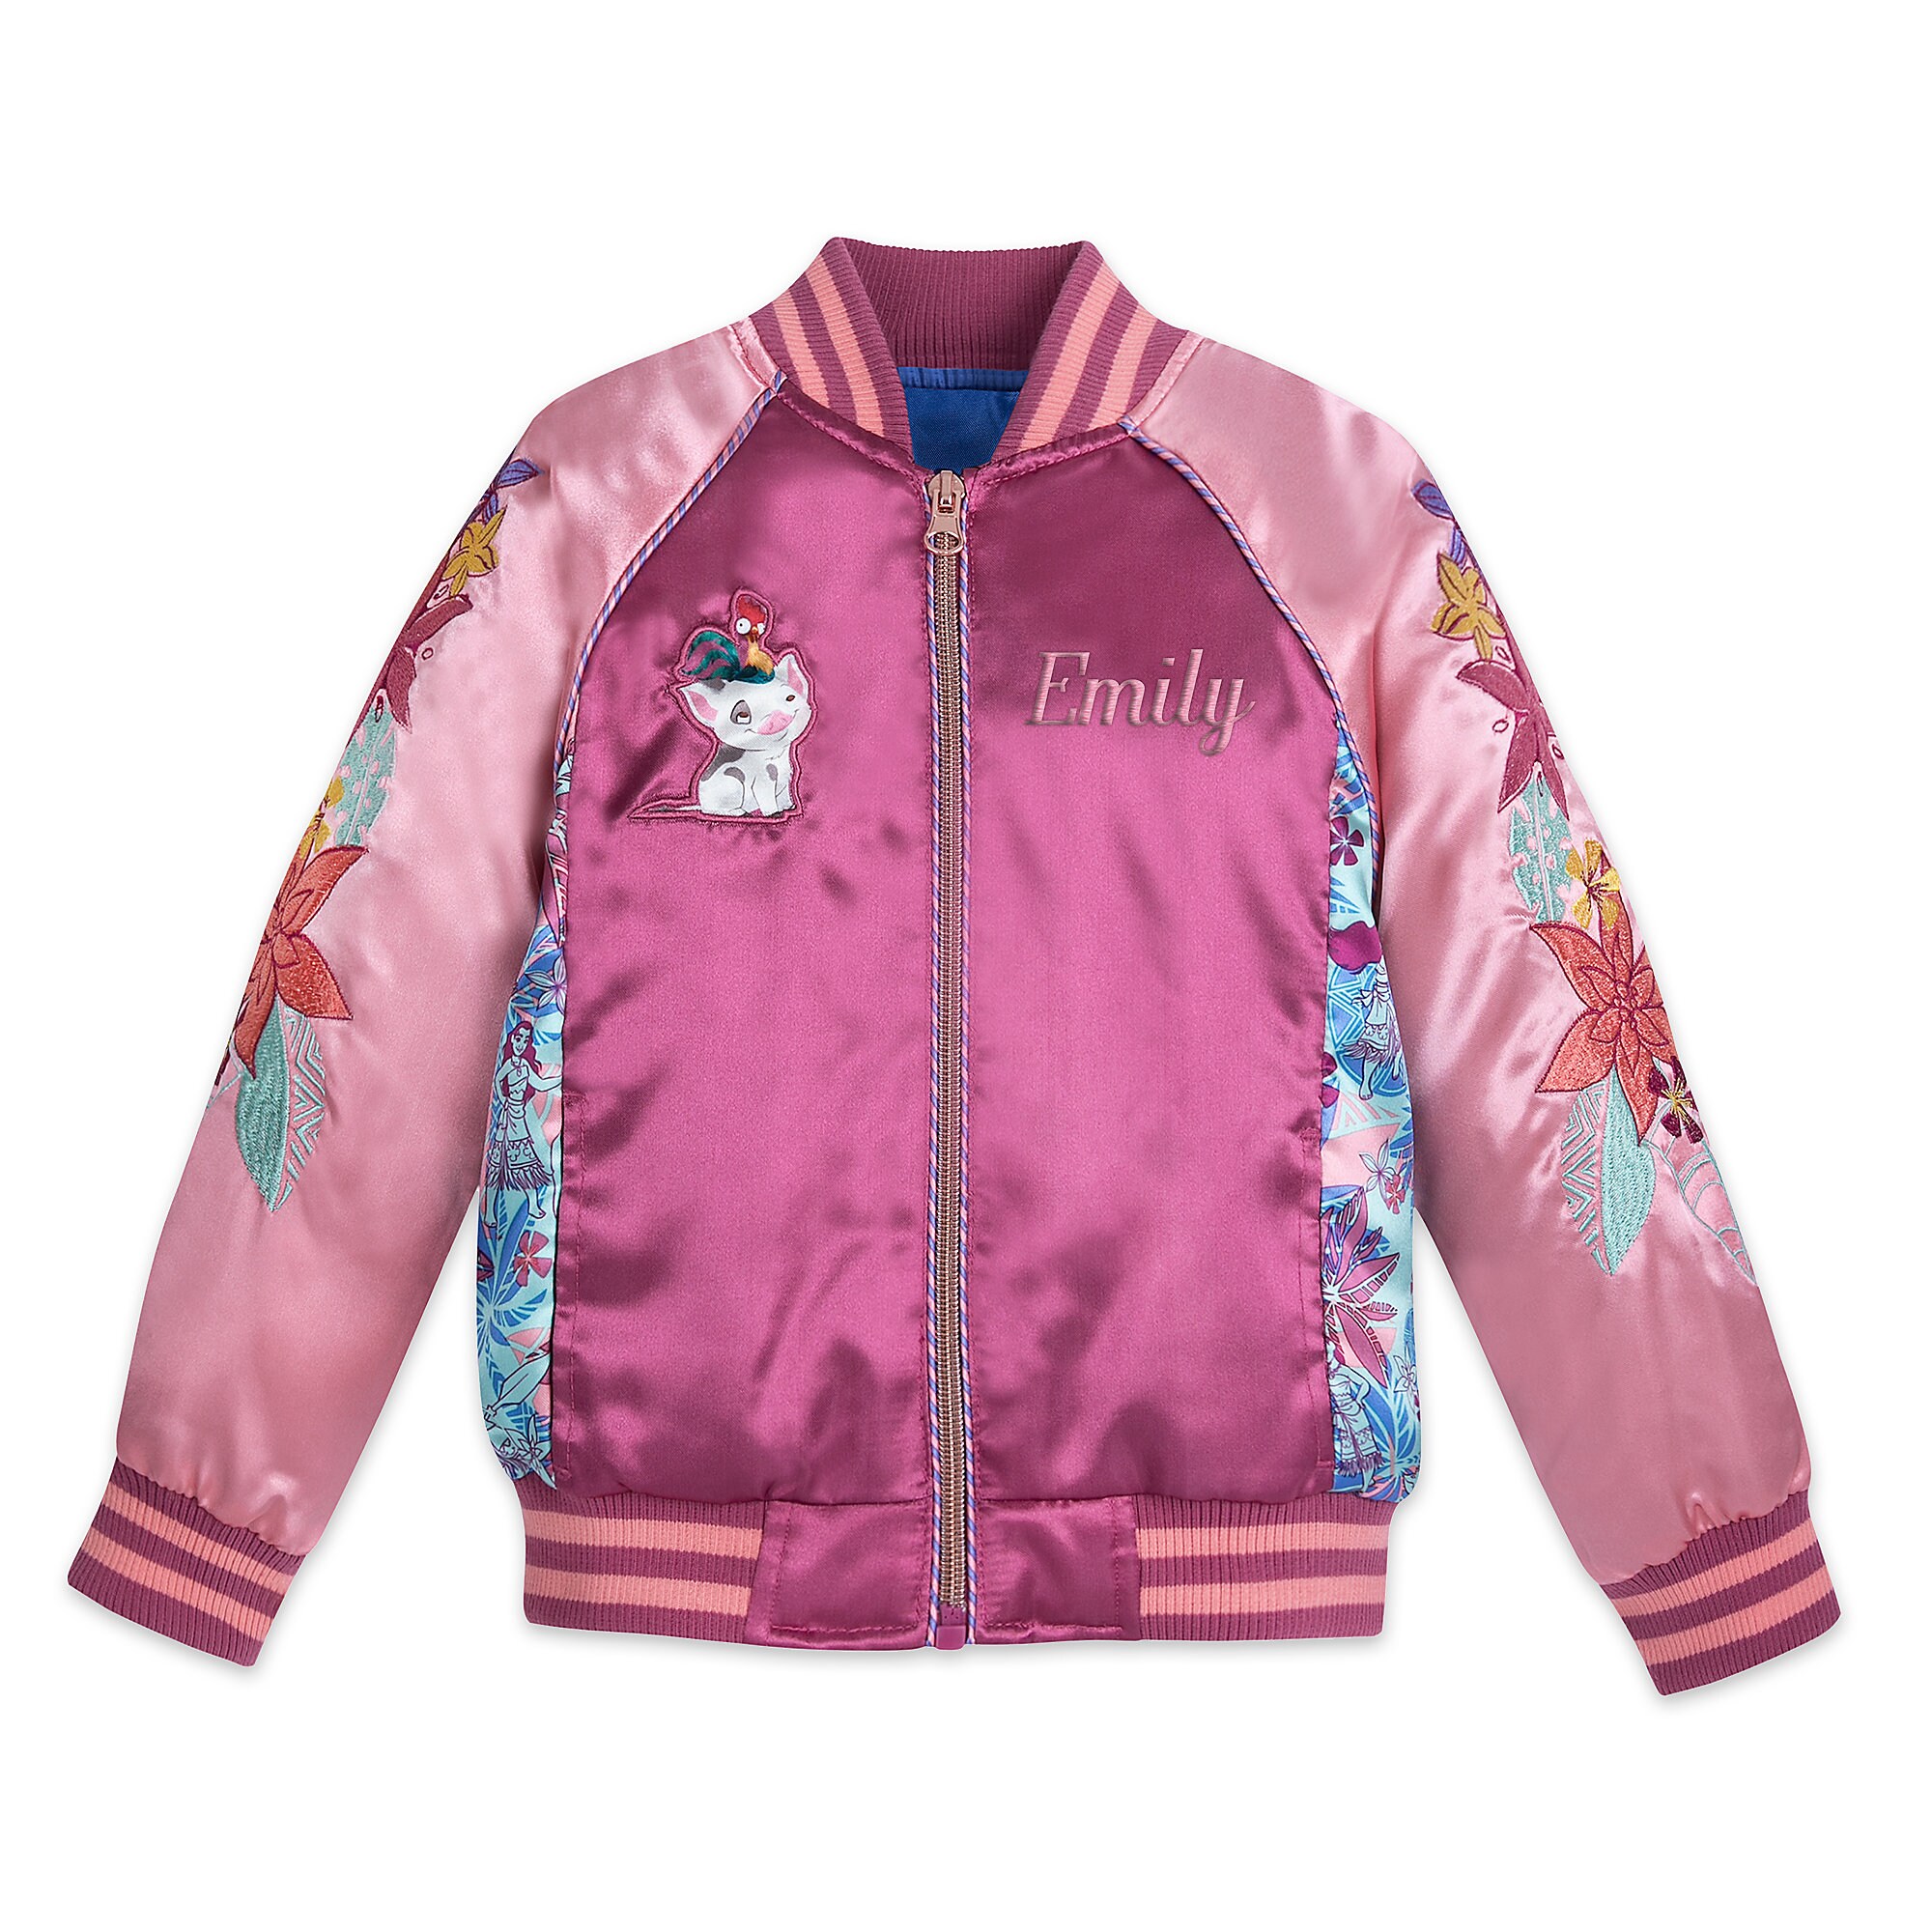 Moana Varsity Jacket for Girls - Personalized